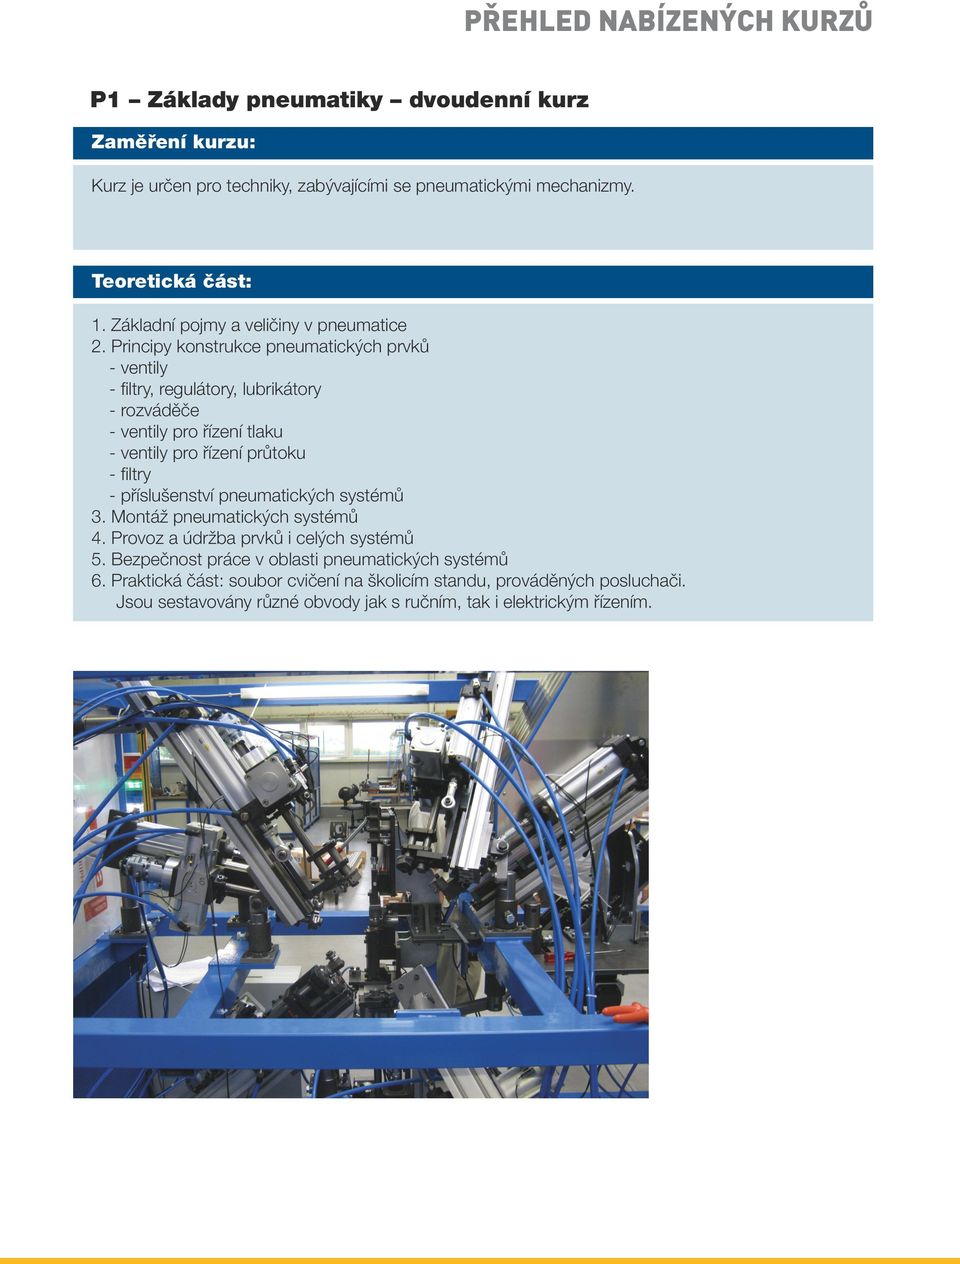 Principy konstrukce pneumatických prvků - ventily - filtry, regulátory, lubrikátory - rozváděče - ventily pro řízení tlaku - ventily pro řízení průtoku - filtry